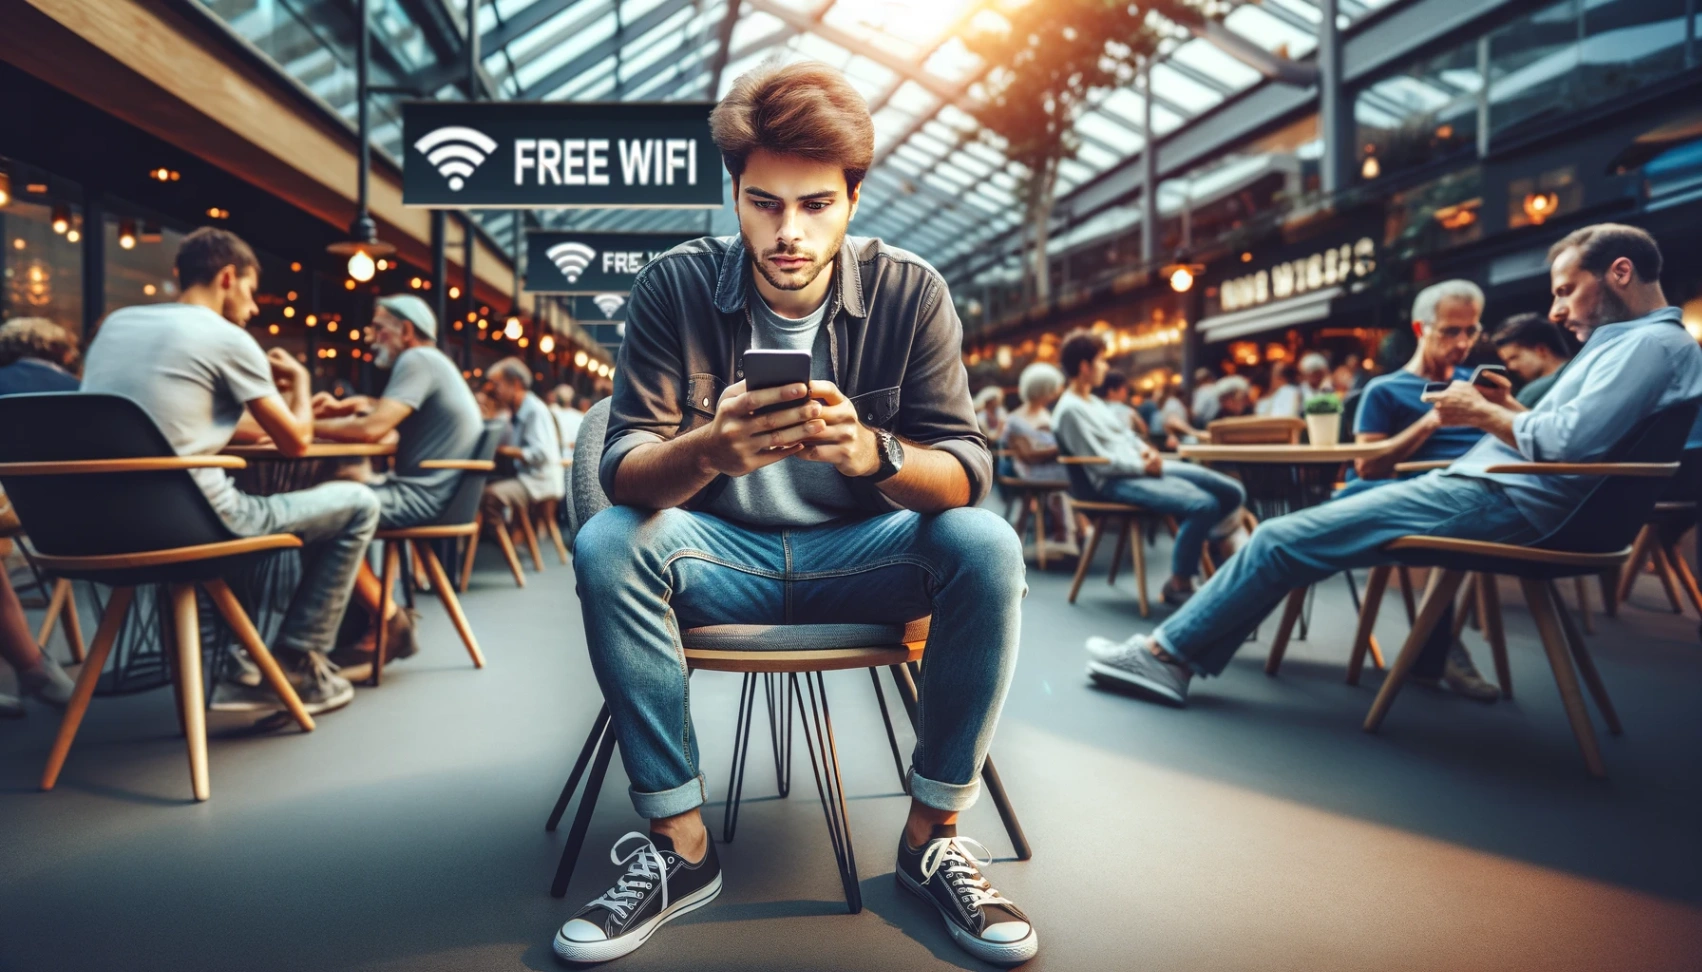 WiFi gratuit: Descoperiți cea mai bună aplicație de găsit rețele WiFi